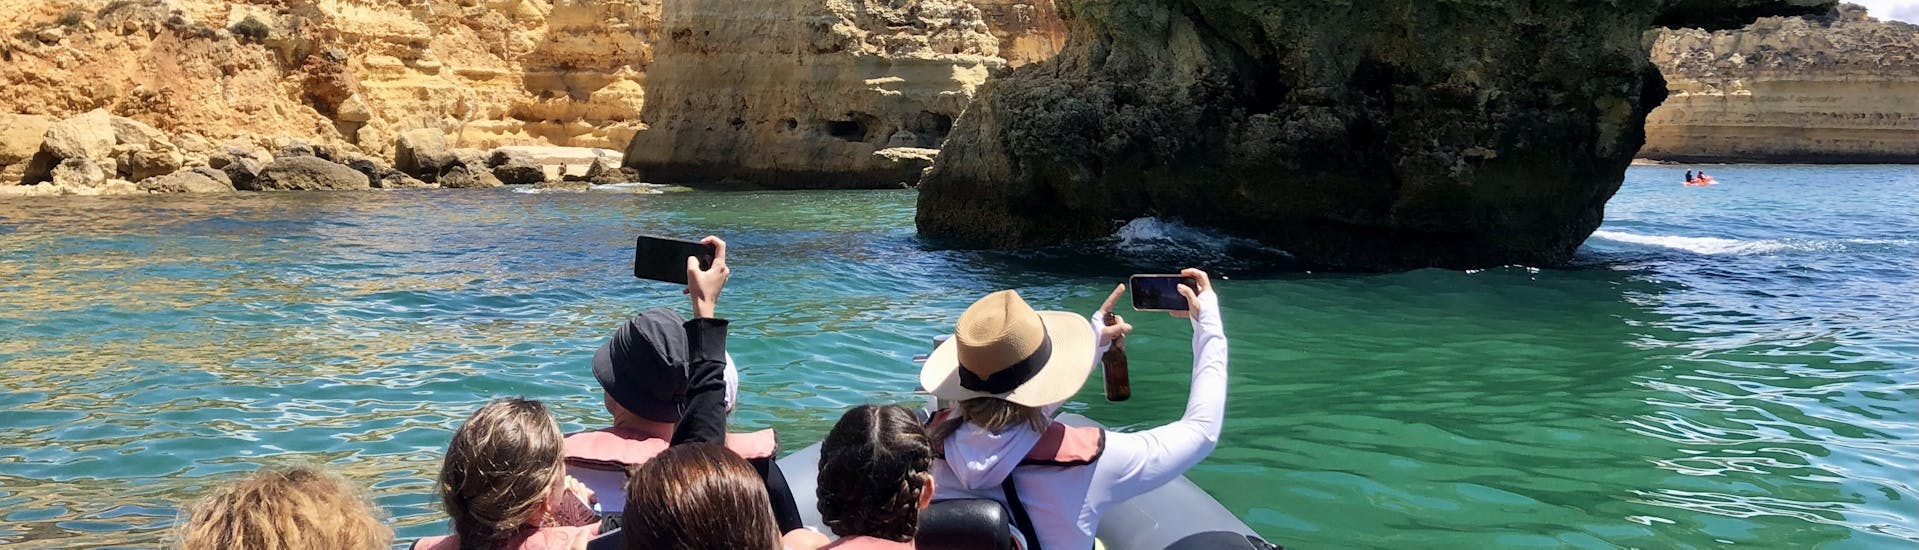 Boottocht van Portimão naar Benagil met zwemmen & toeristische attracties.